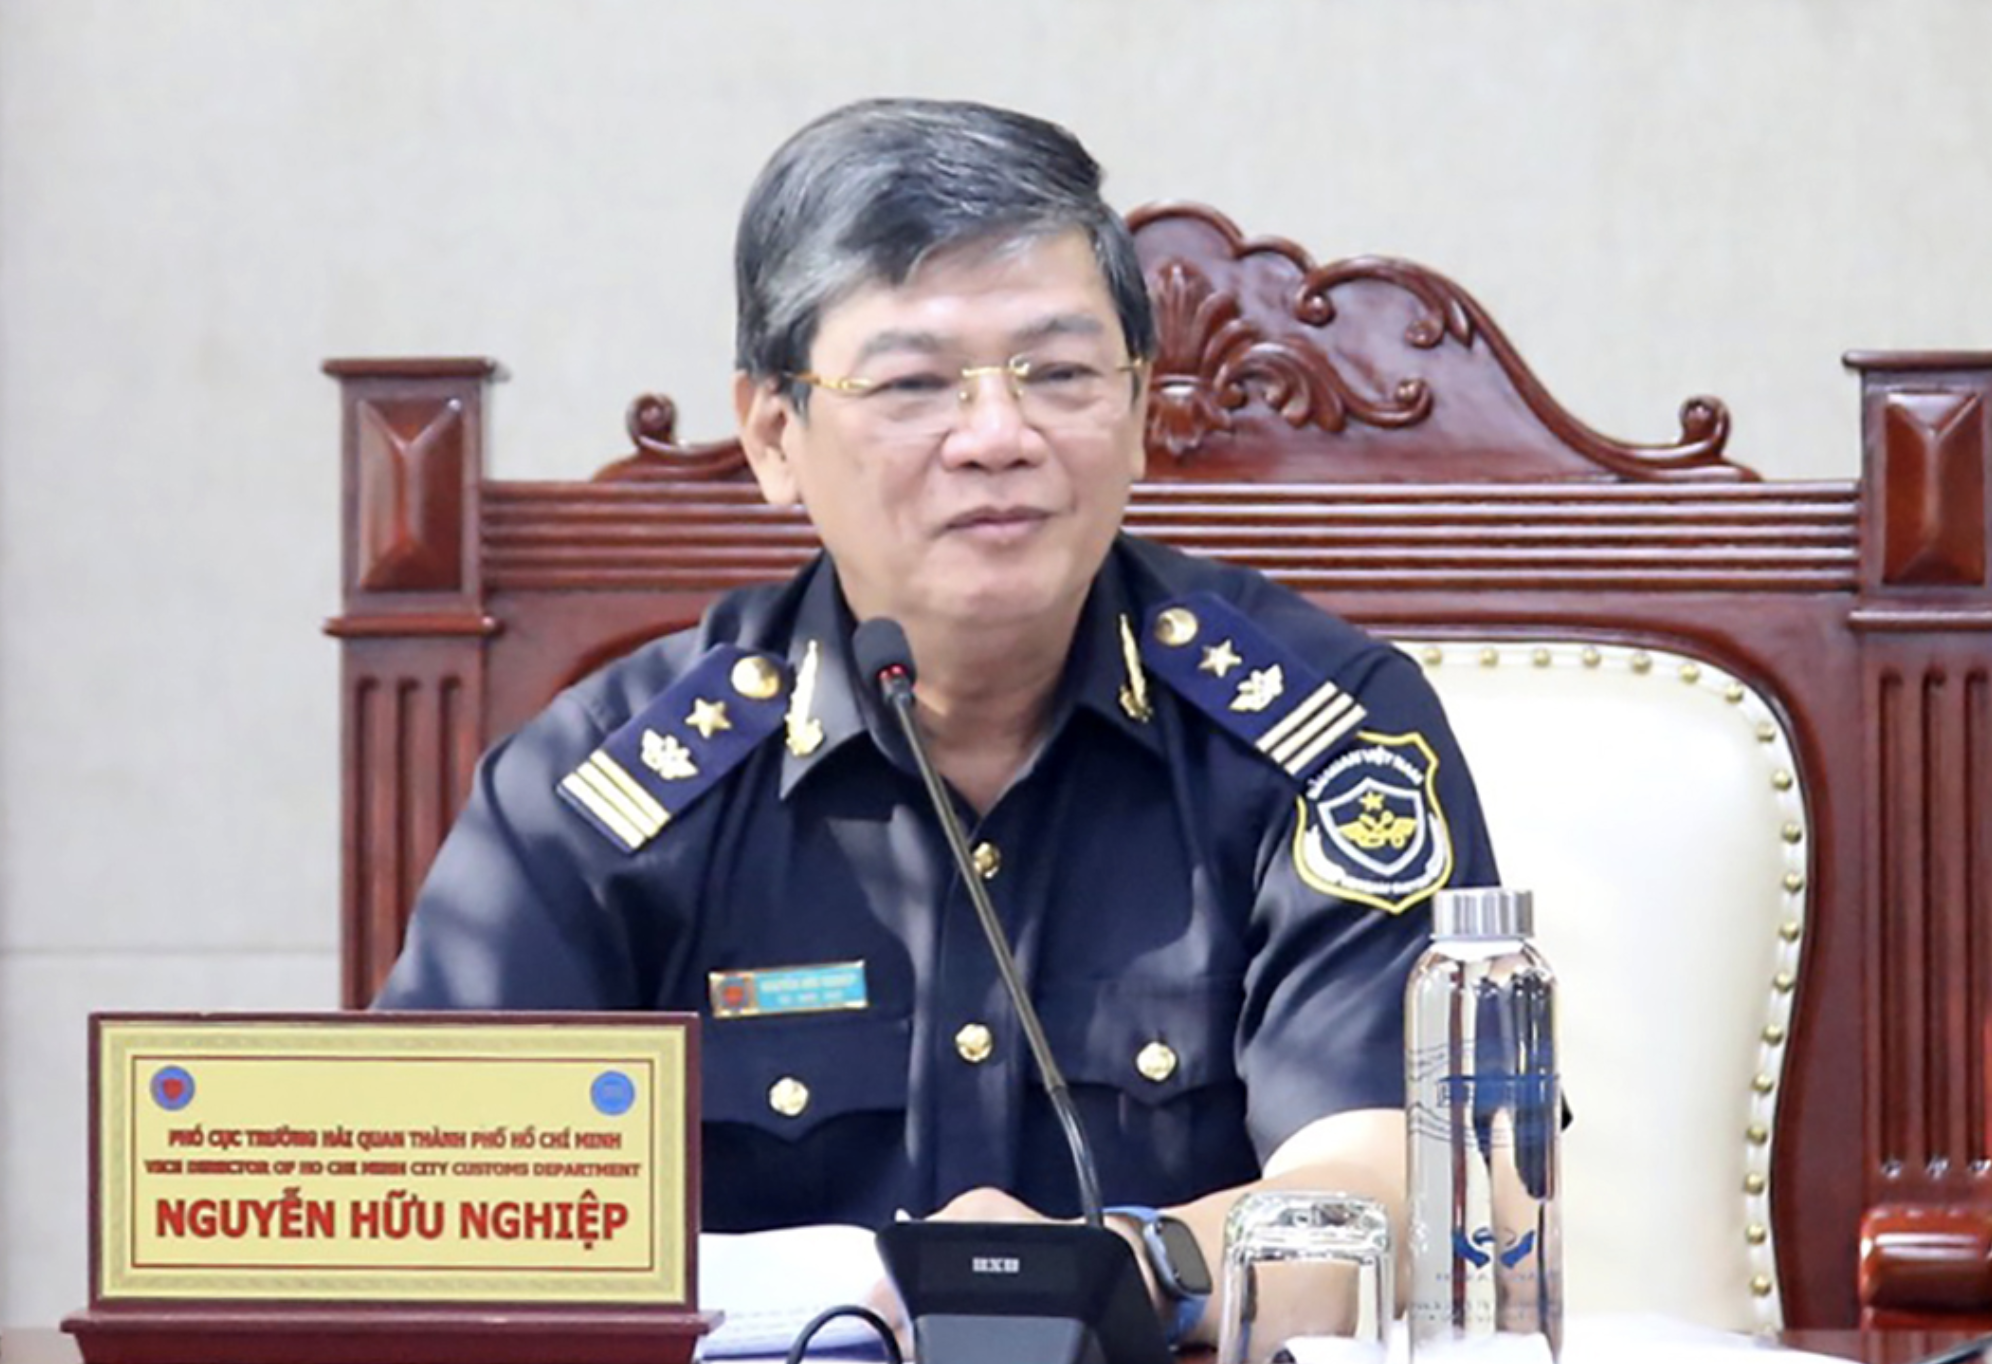 Ông Nguyễn Hữu Nghiệp, Cục phó Hải quan TP HCM 